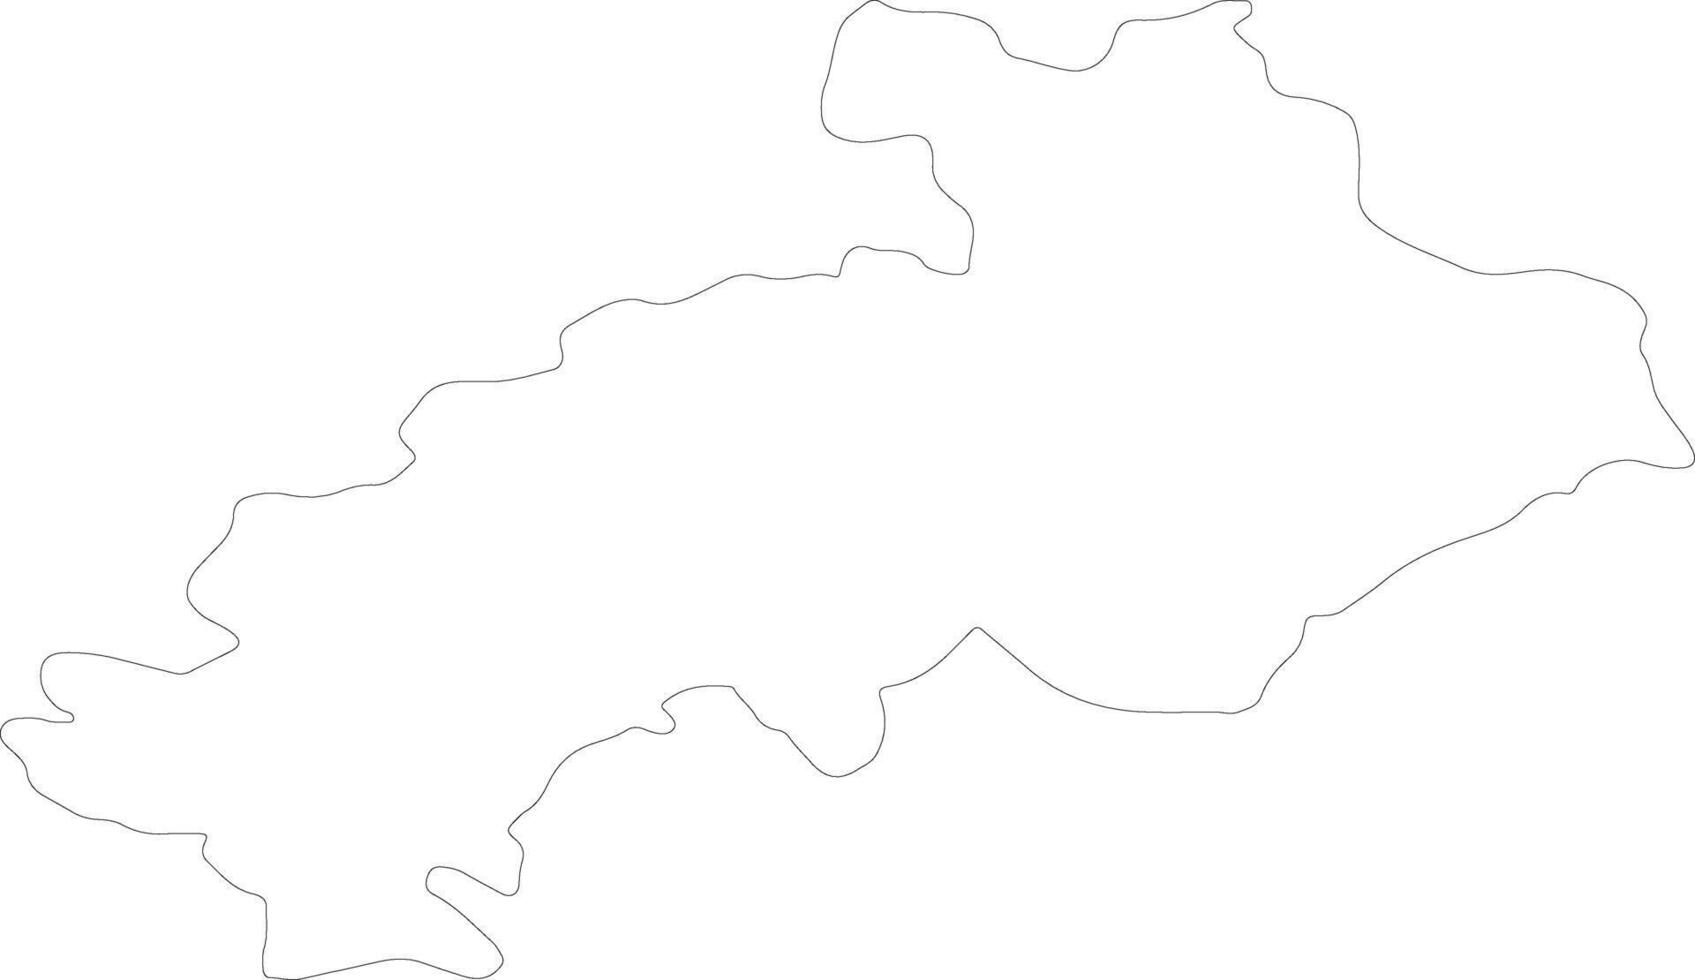 hautes-alpes Frankrijk schets kaart vector